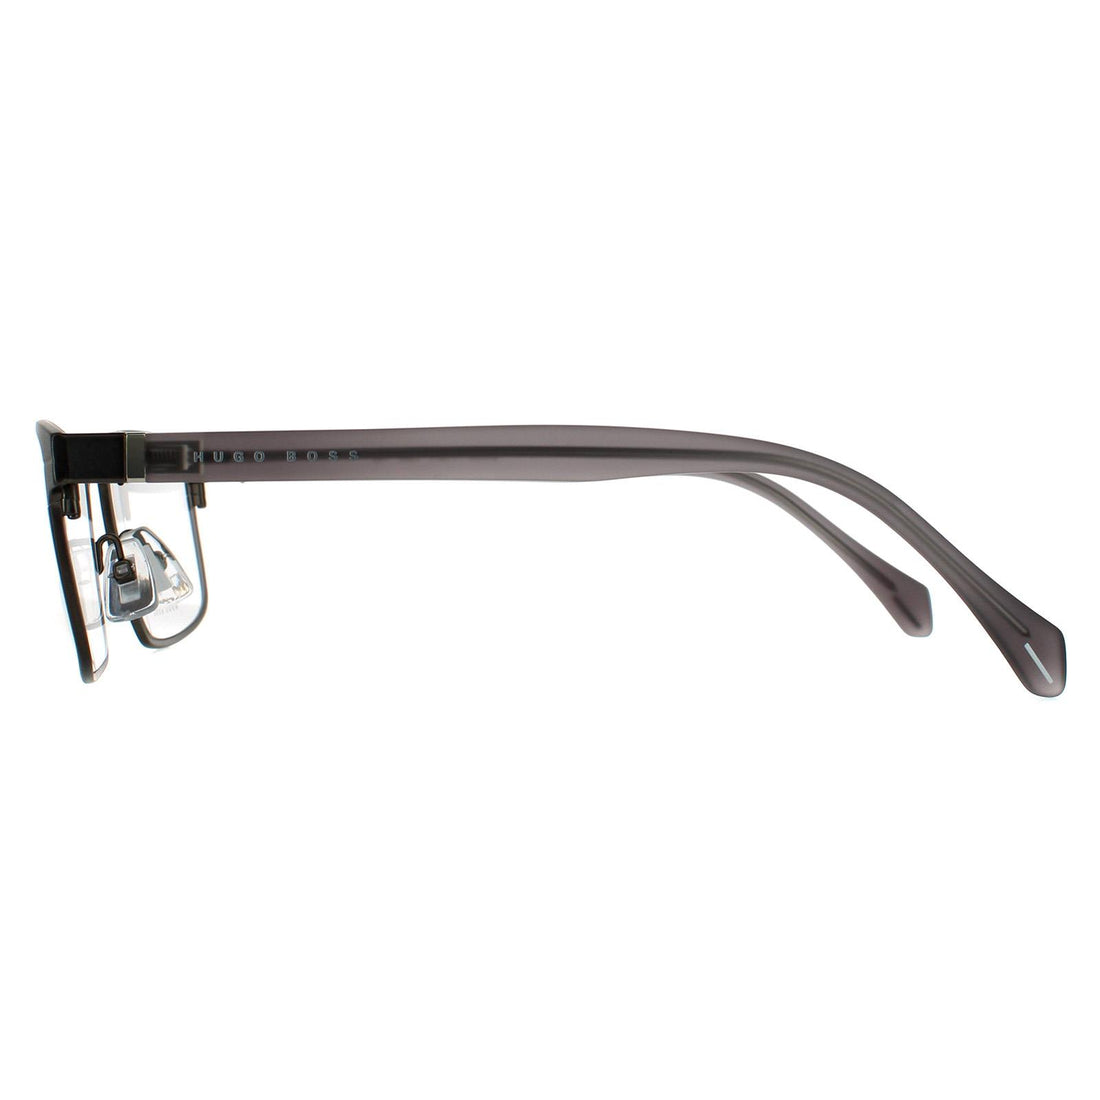 Hugo Boss Glasses Frames BOSS 1119/IT R80 Matte Dark Ruthenium Men